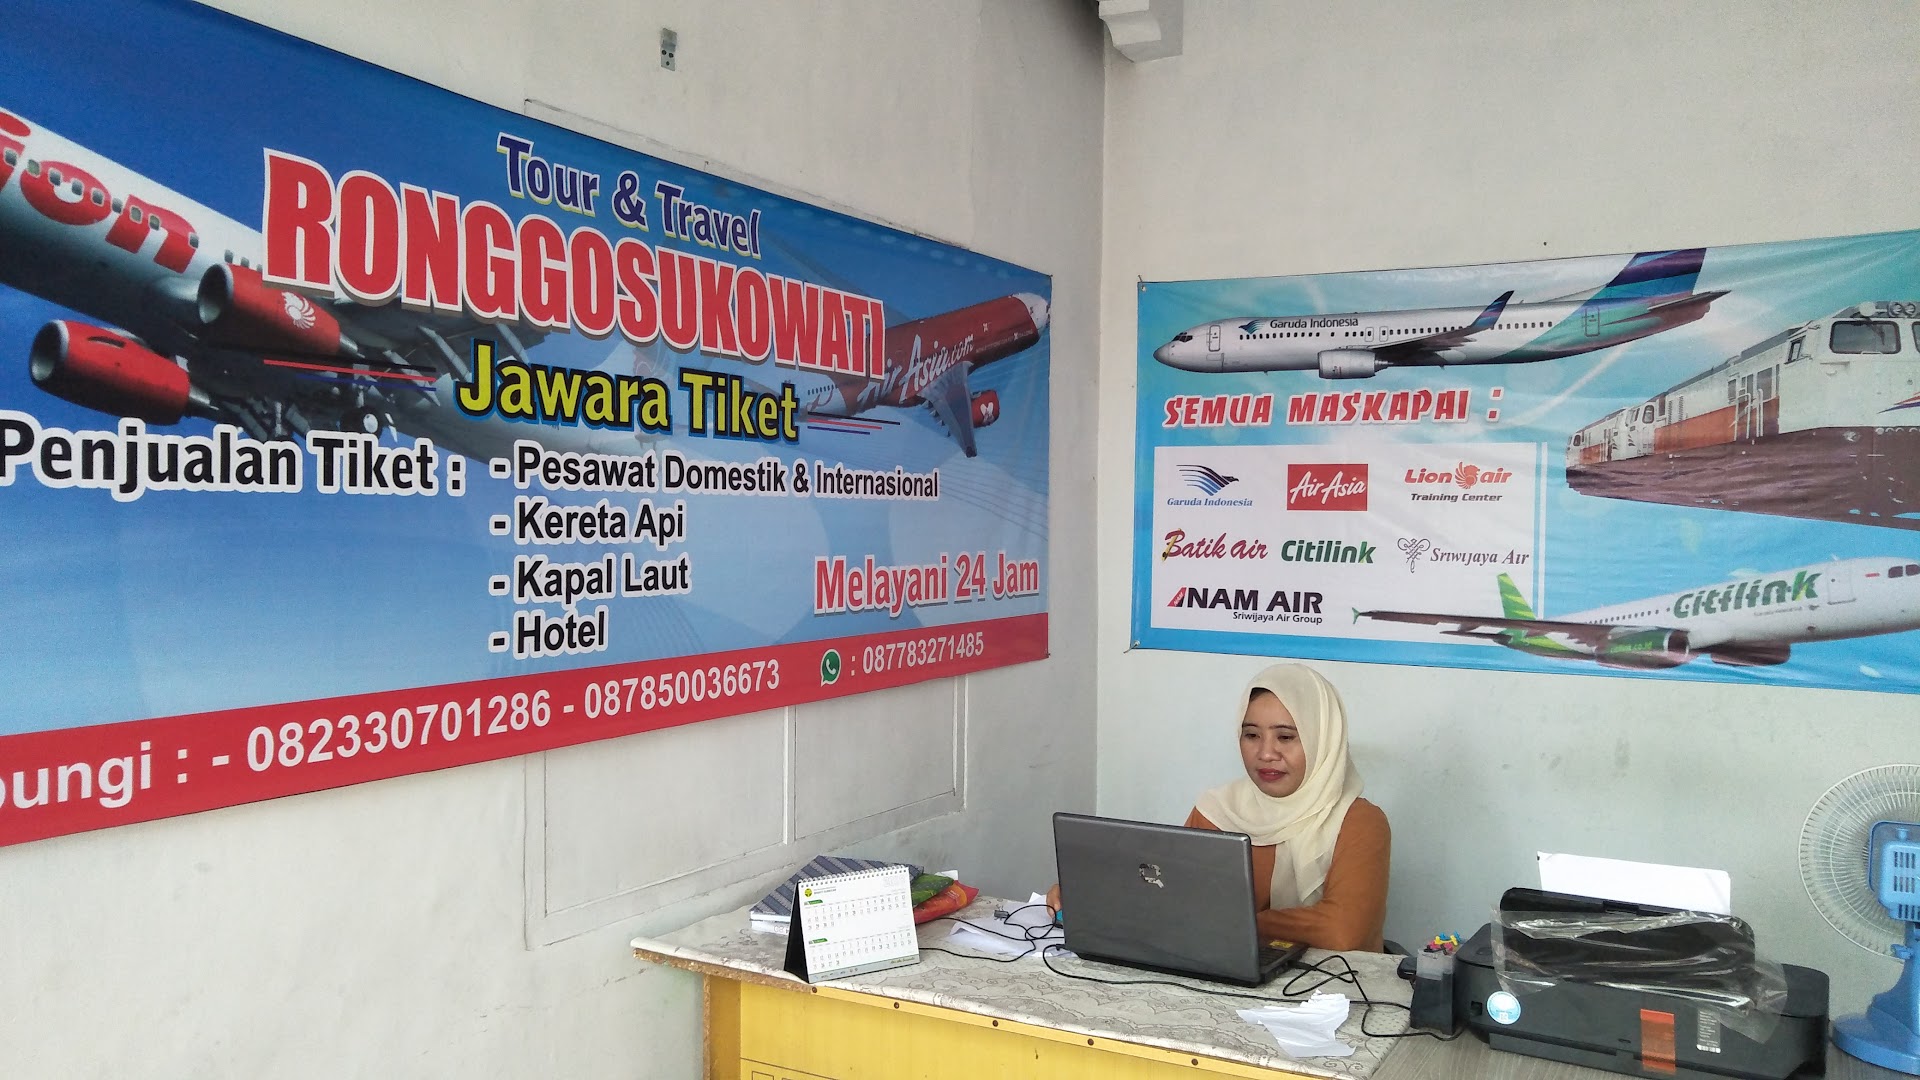 Tiket Pesawat Ronggosukowati Jawara Photo